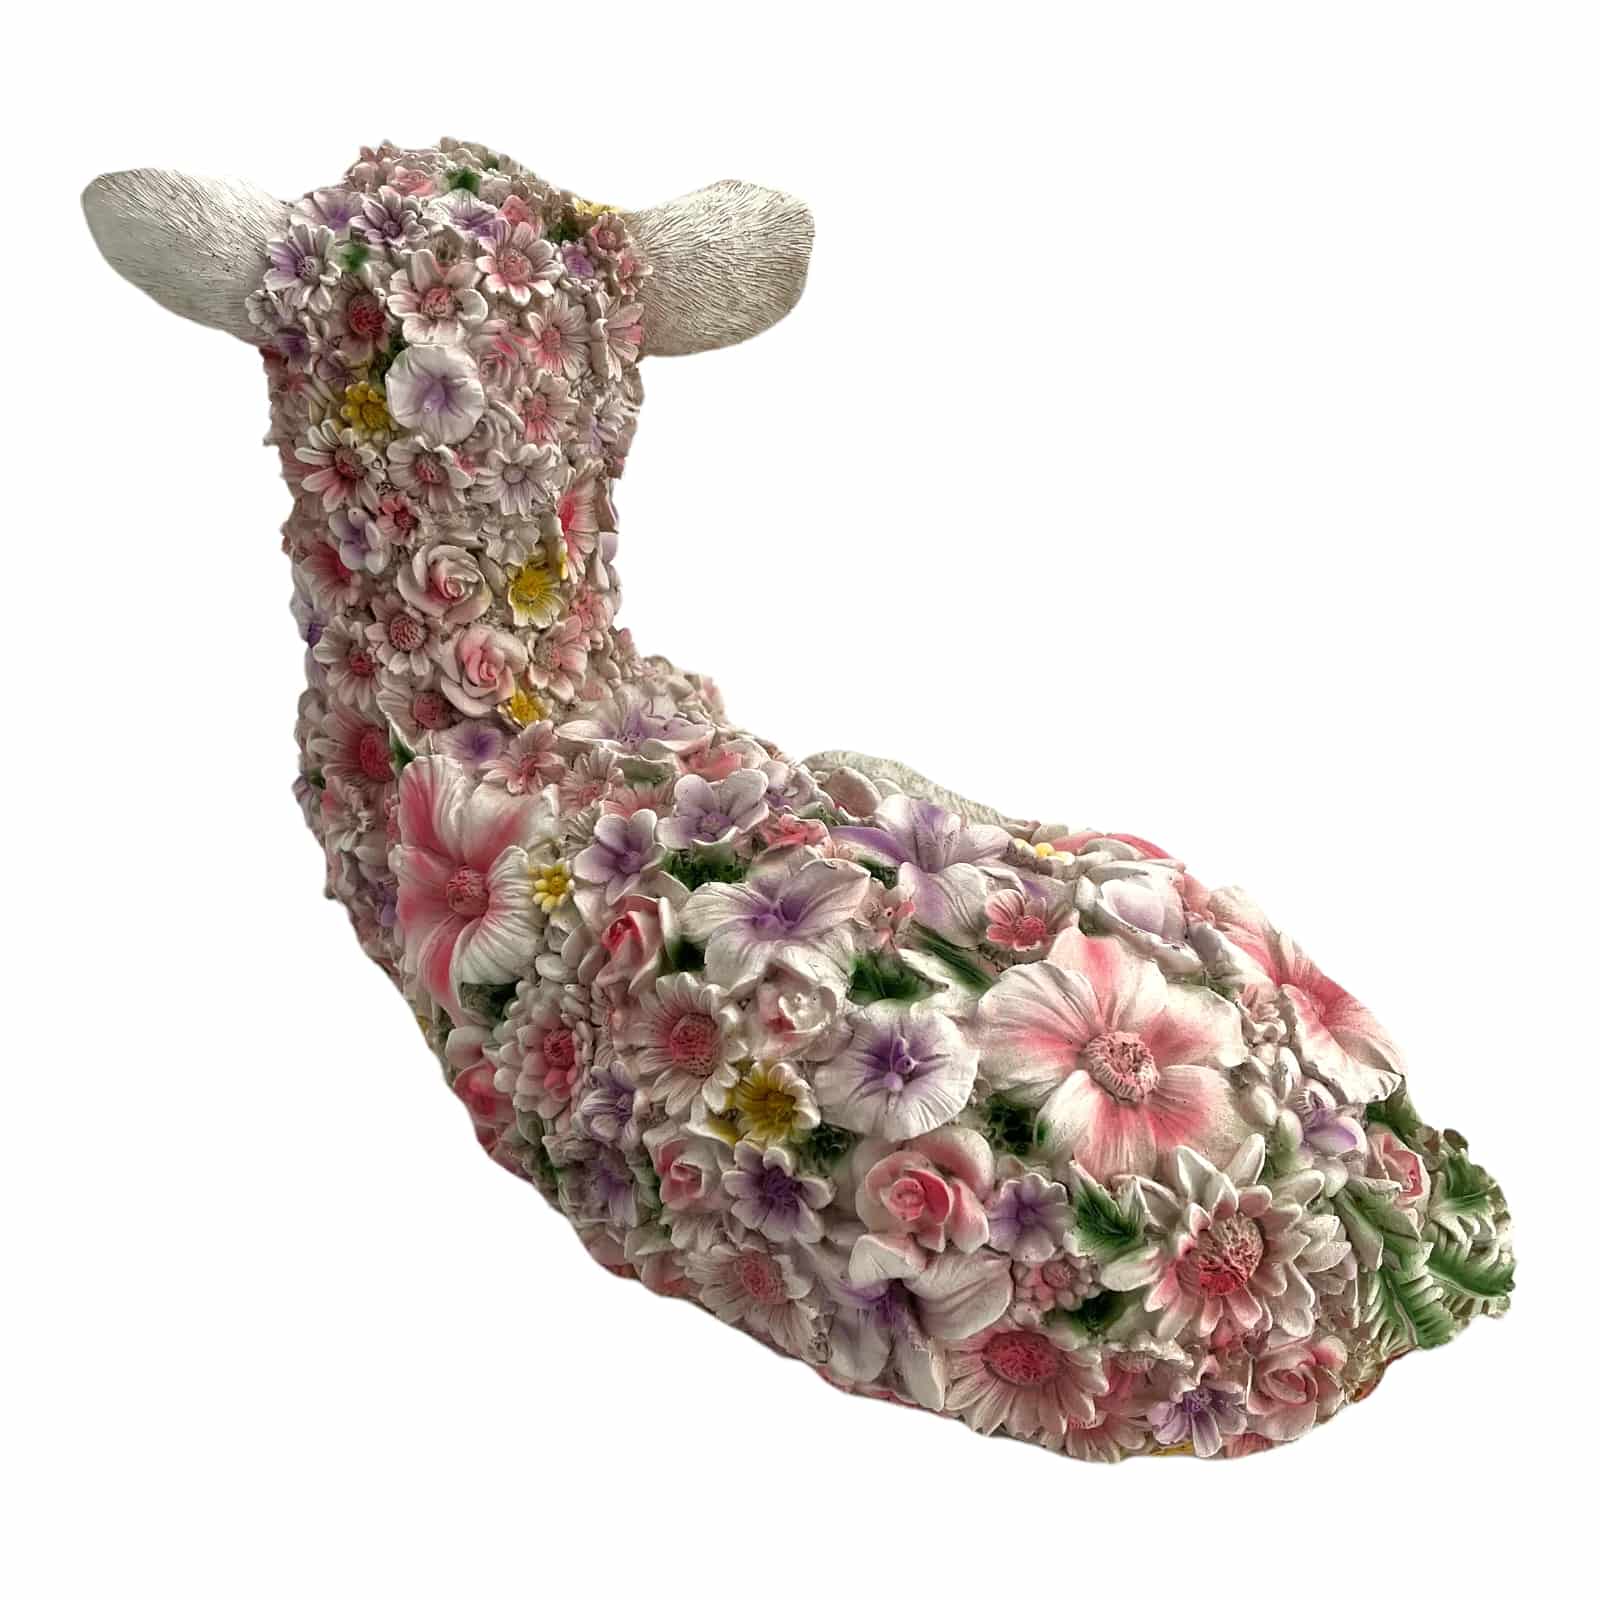 Schaf im Blumenkleid - liegend